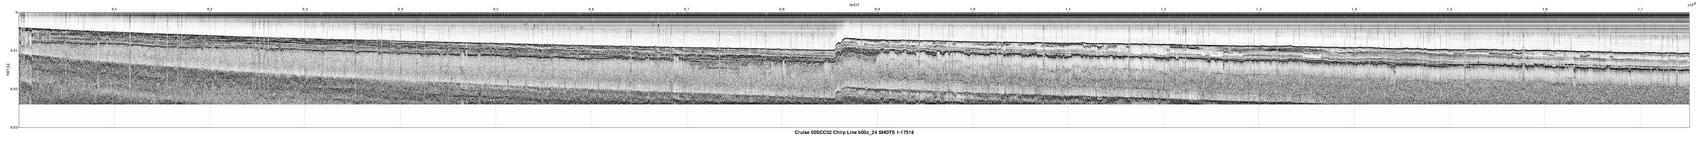 00SCC02 b00c_24 seismic profile image